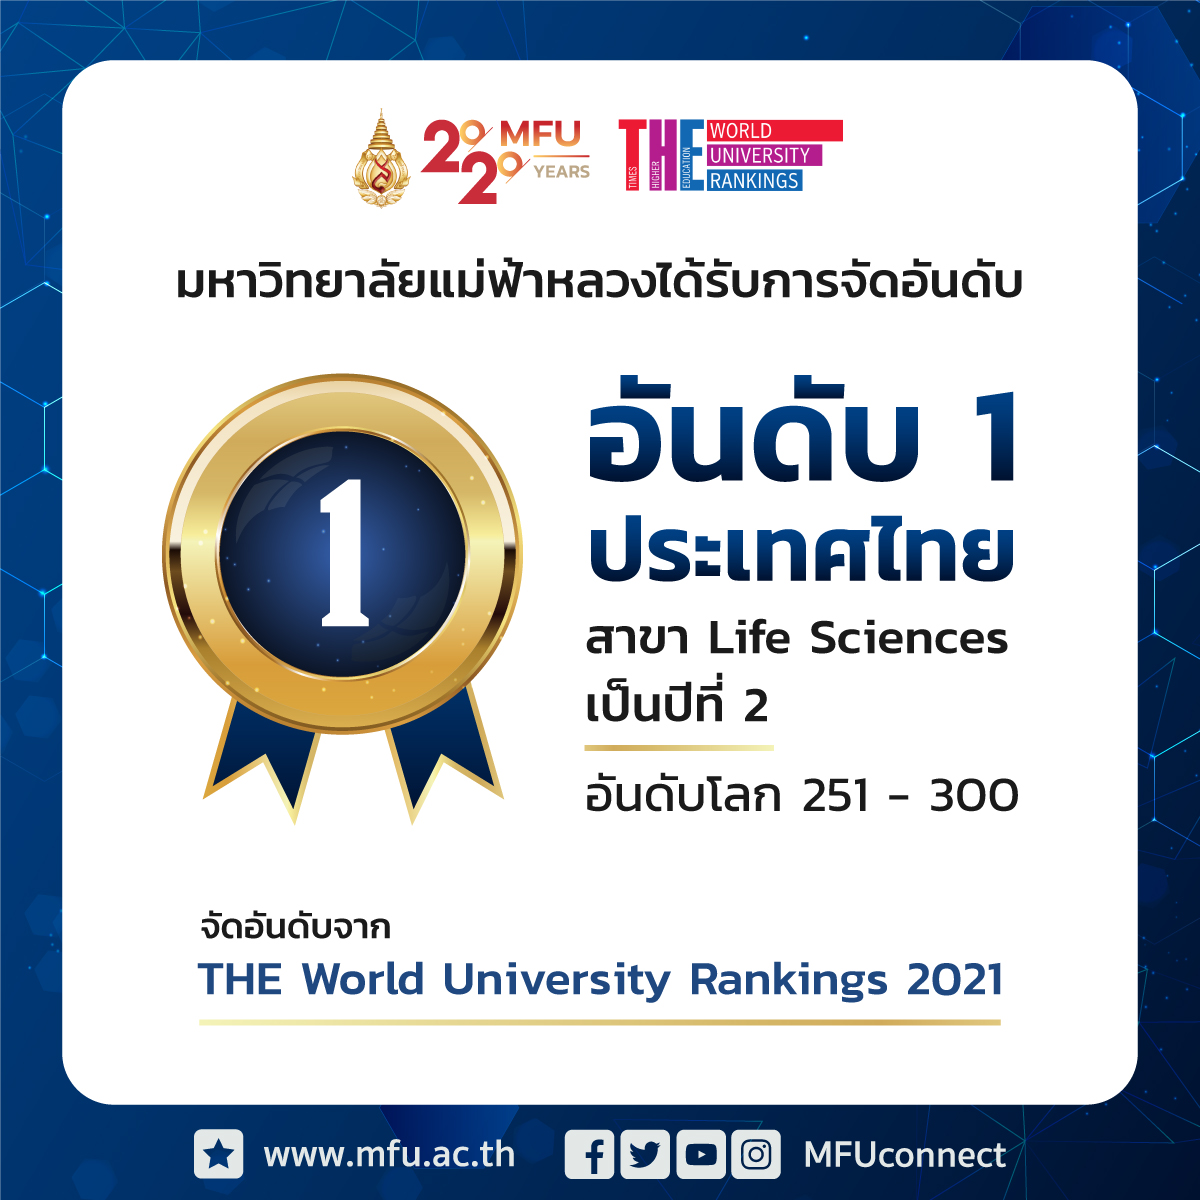 มฟล. อันดับ 1 ในไทยสาขา Life Sciences ปี 2021 จาก Times Higher Education (THE)